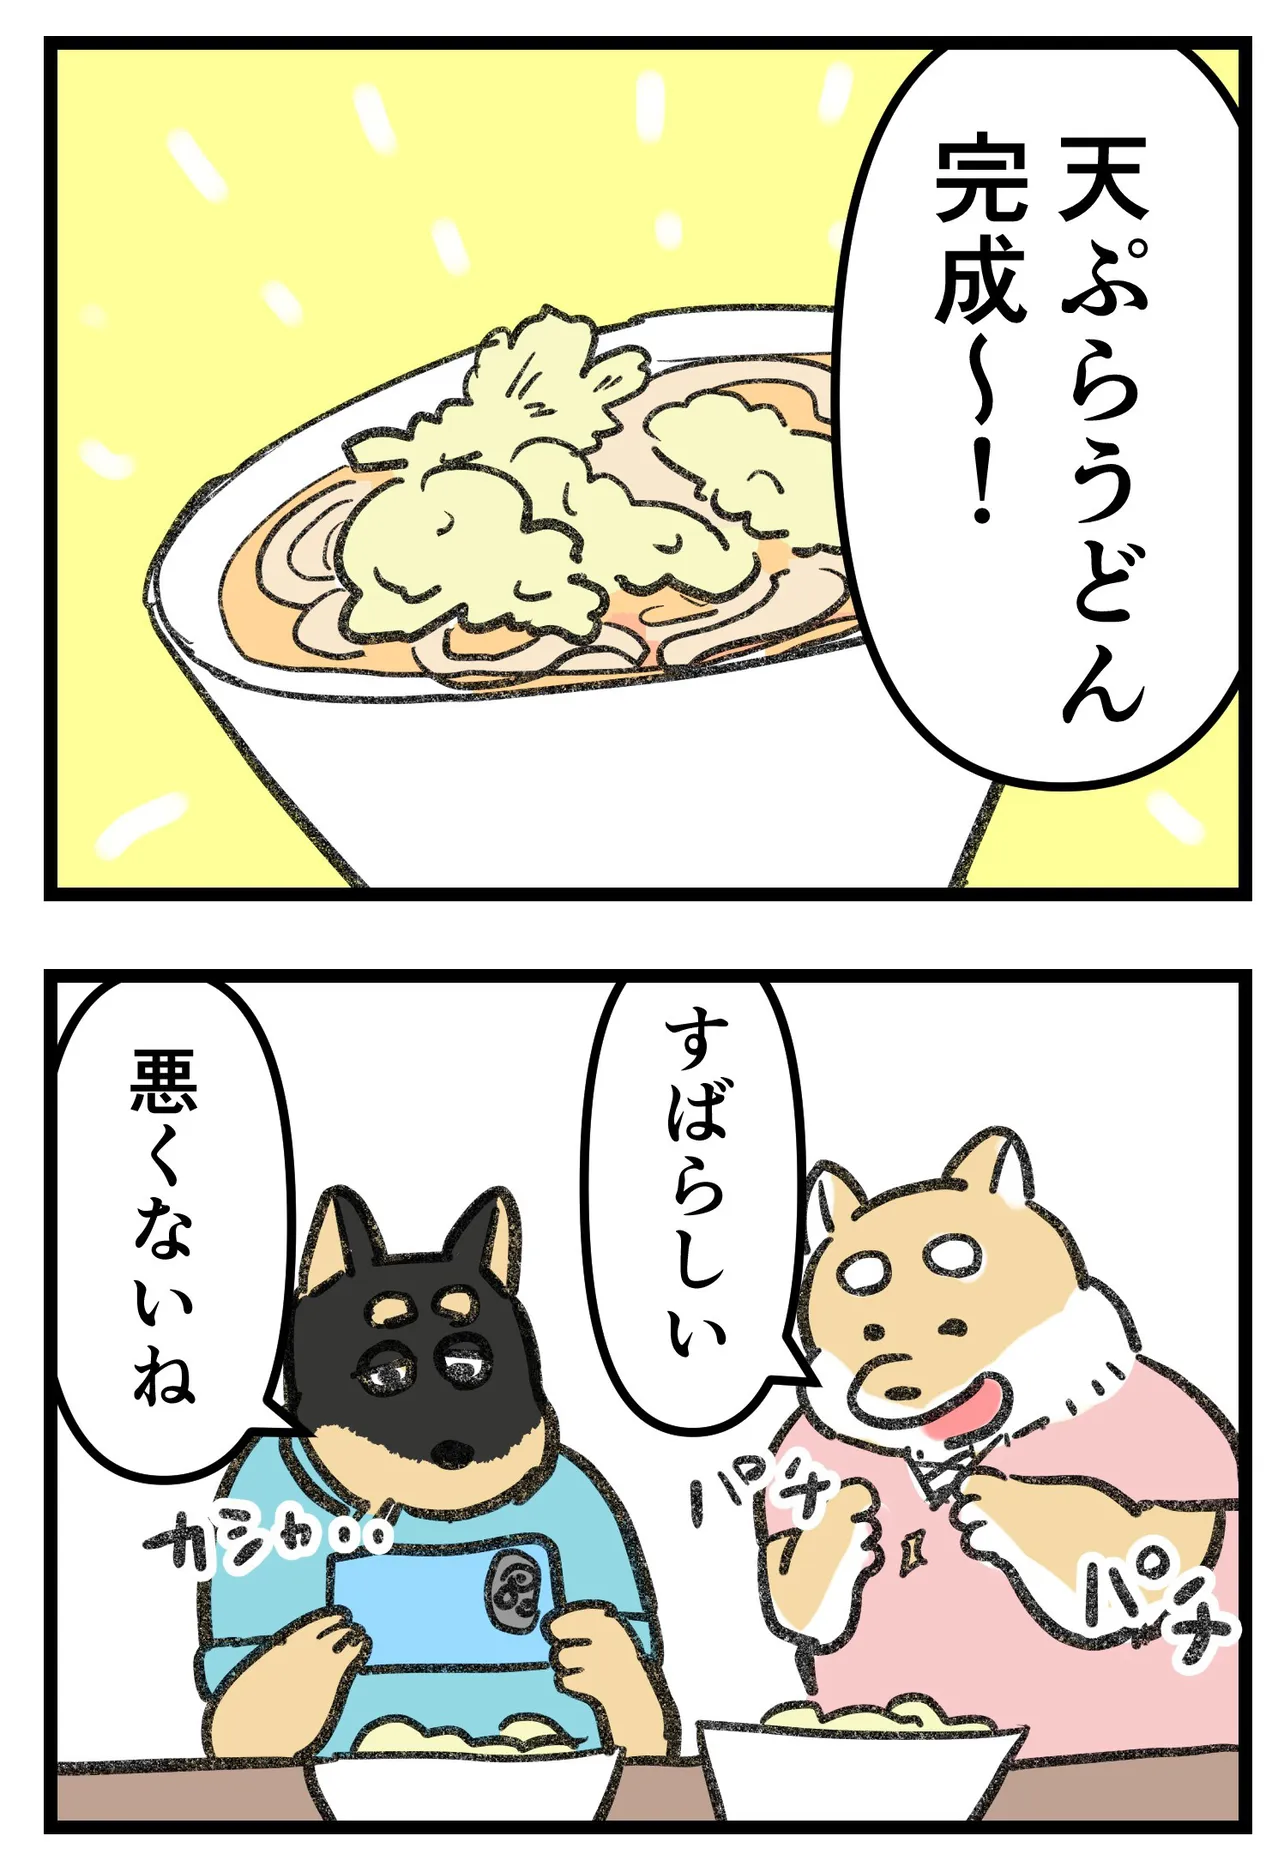 『柴犬二匹が山菜の天ぷらを作って食べる話』(10/16)